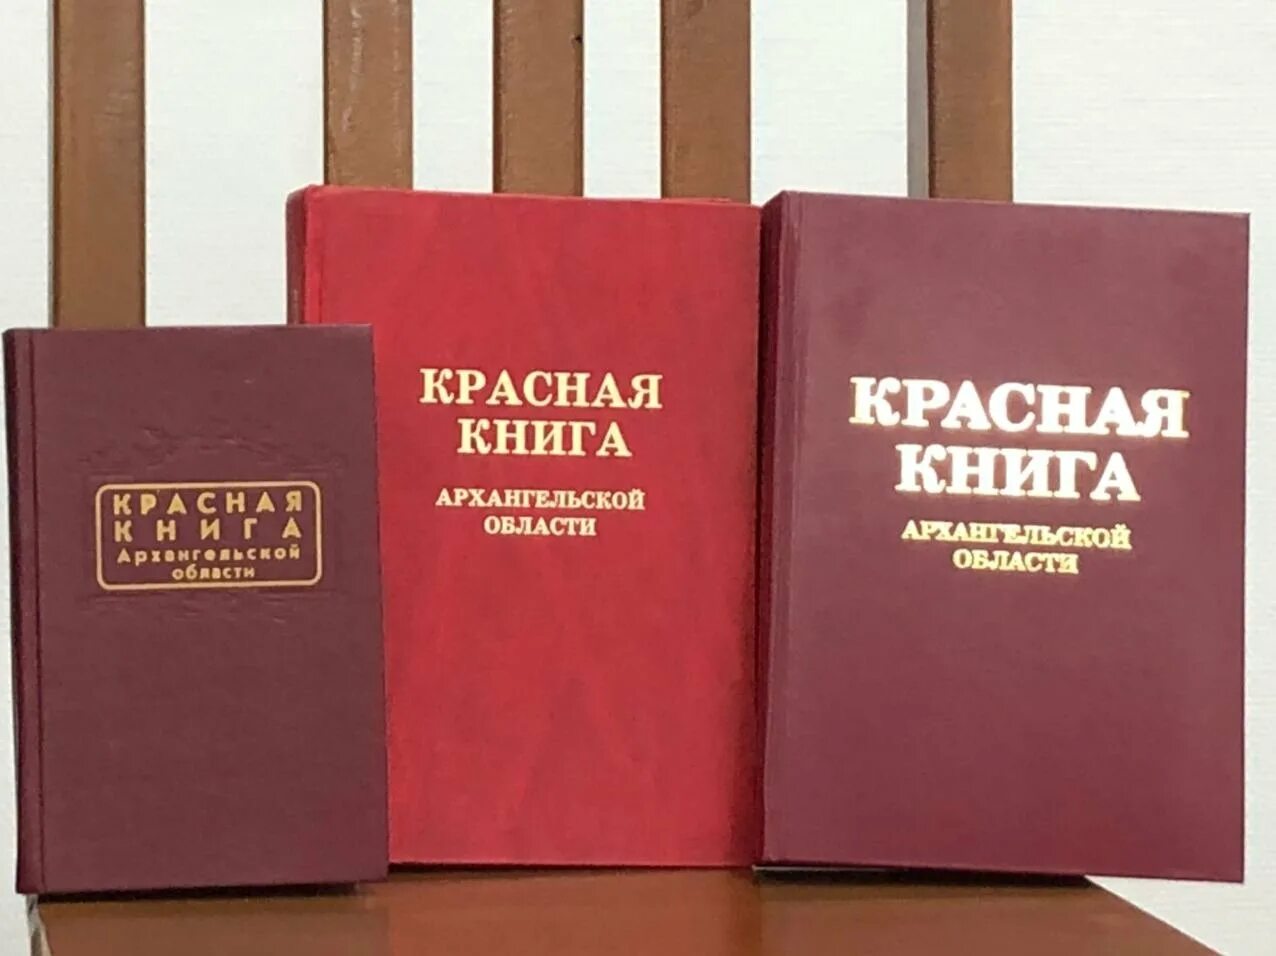 Книги похожие на красную книгу. Красная книга. Krassnaya kniqa. Красная книга обложка. Виды красных книг.